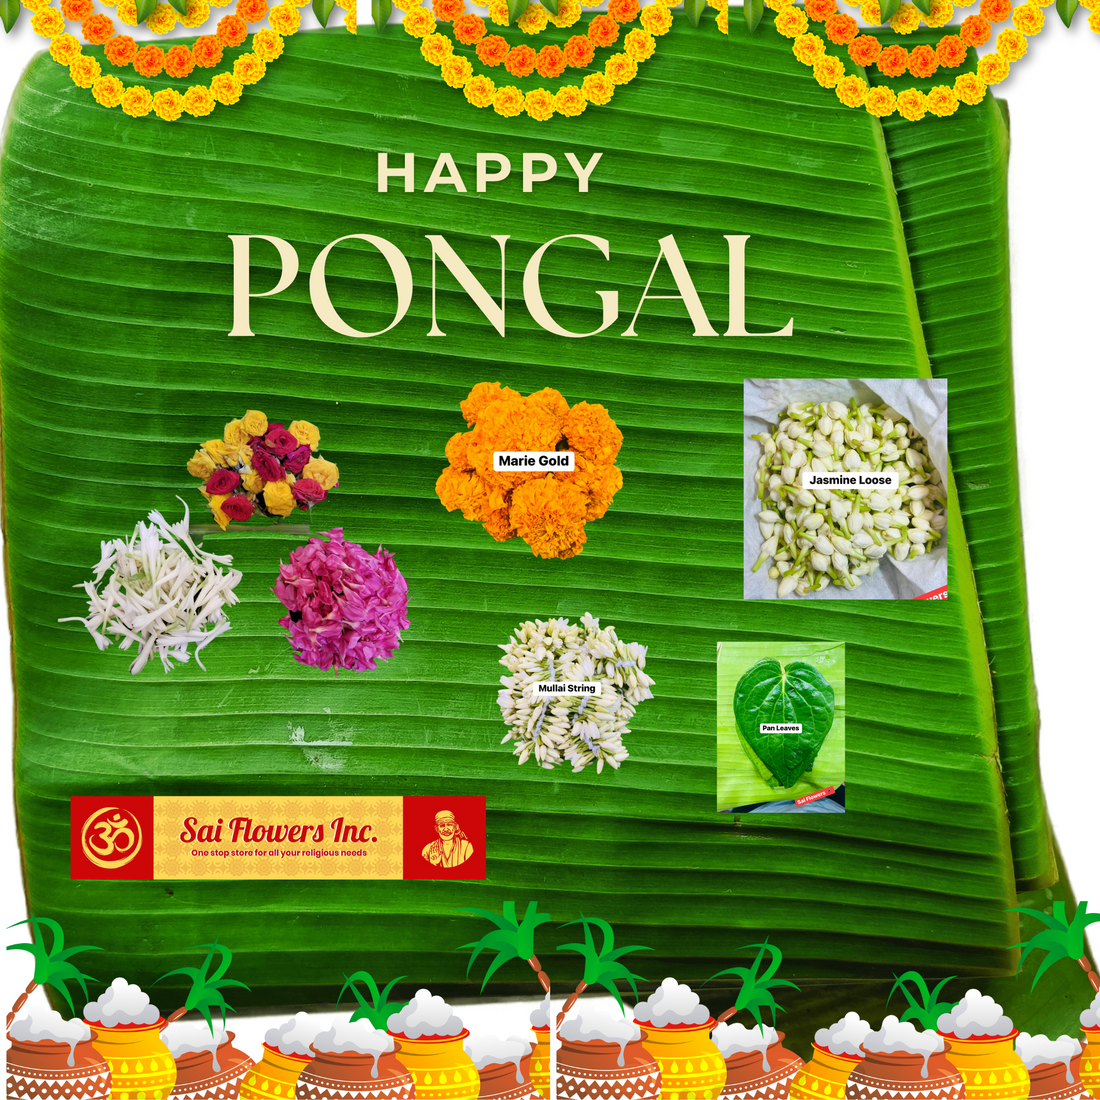 How Flower Enhances Pongal's Festive Experiences